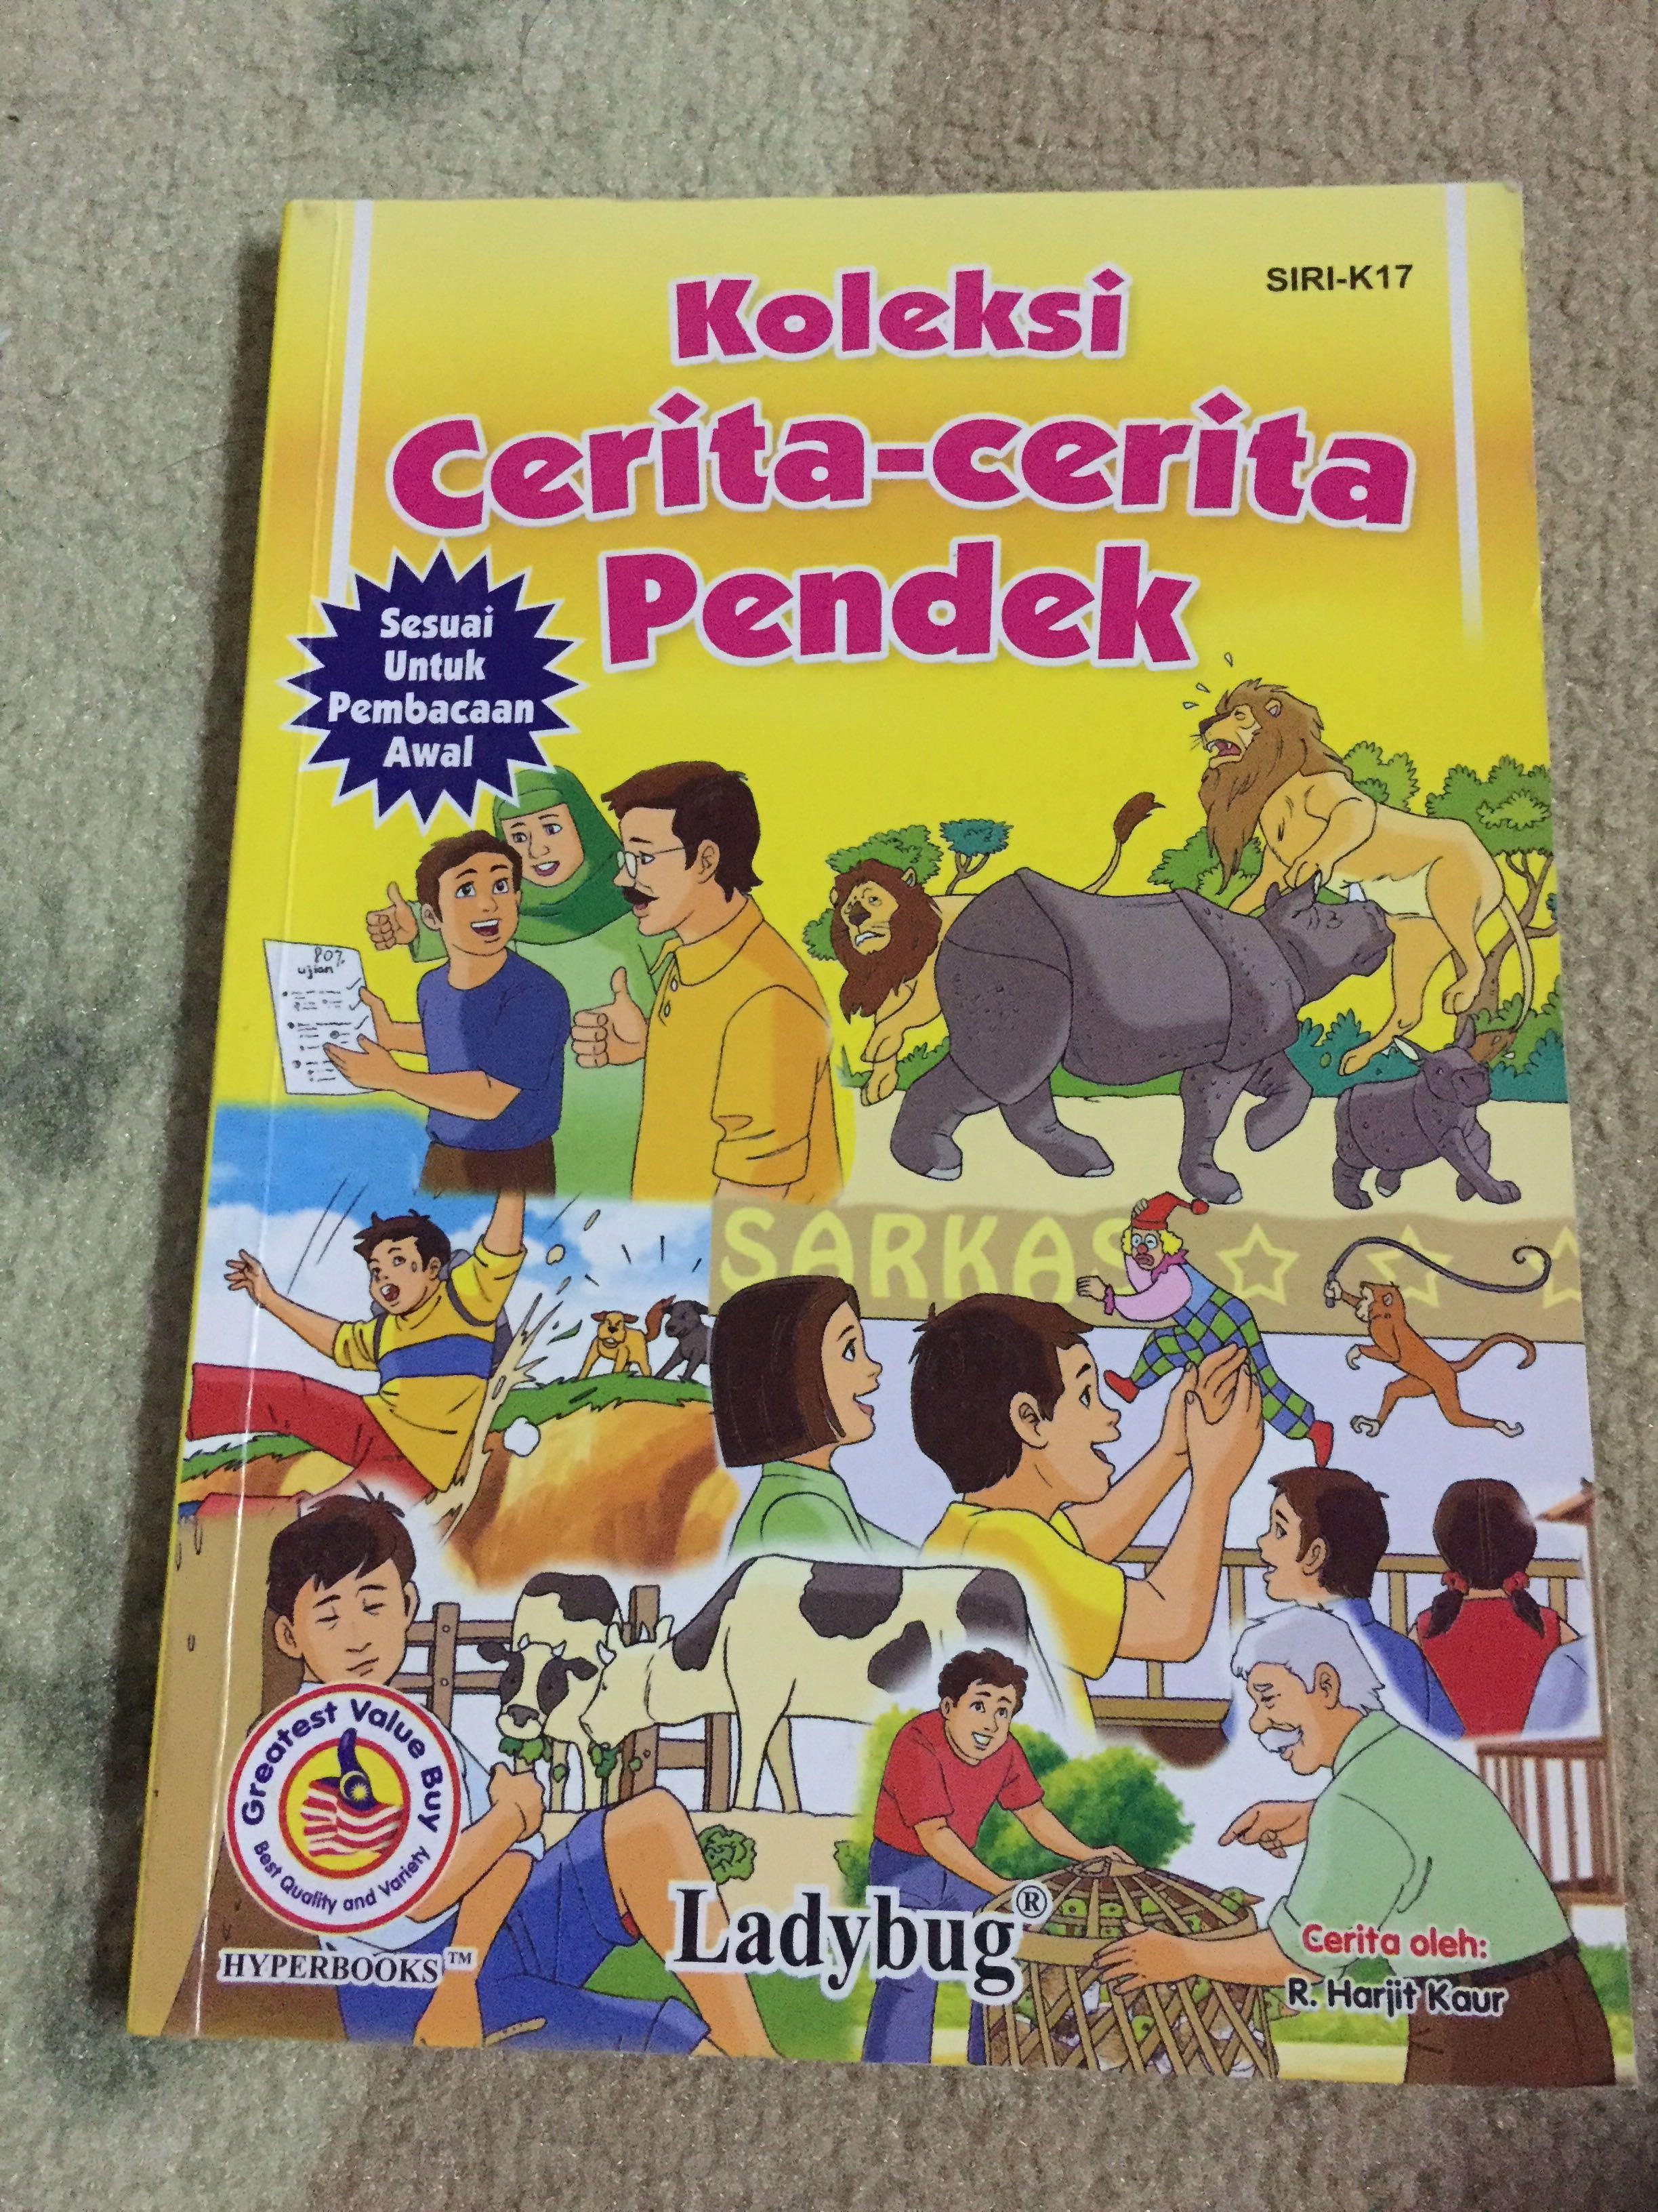 Koleksi Cerita Cerita Pendek Books Stationery Children S Books On Carousell